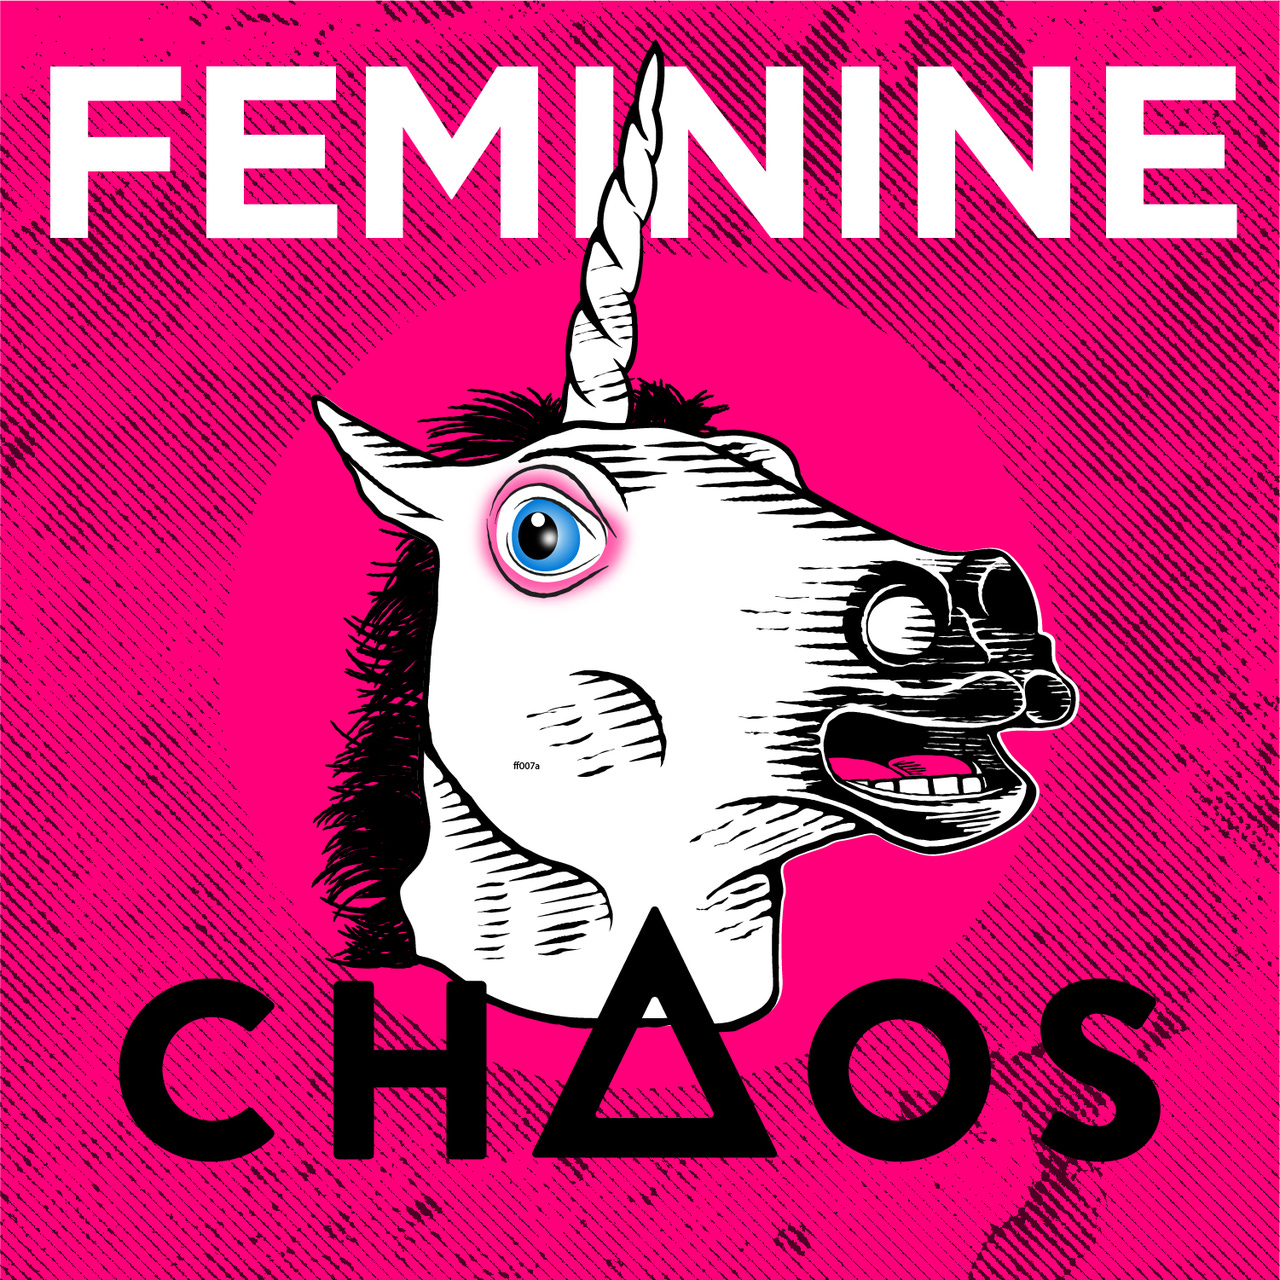 Artwork for Feminine Chaos